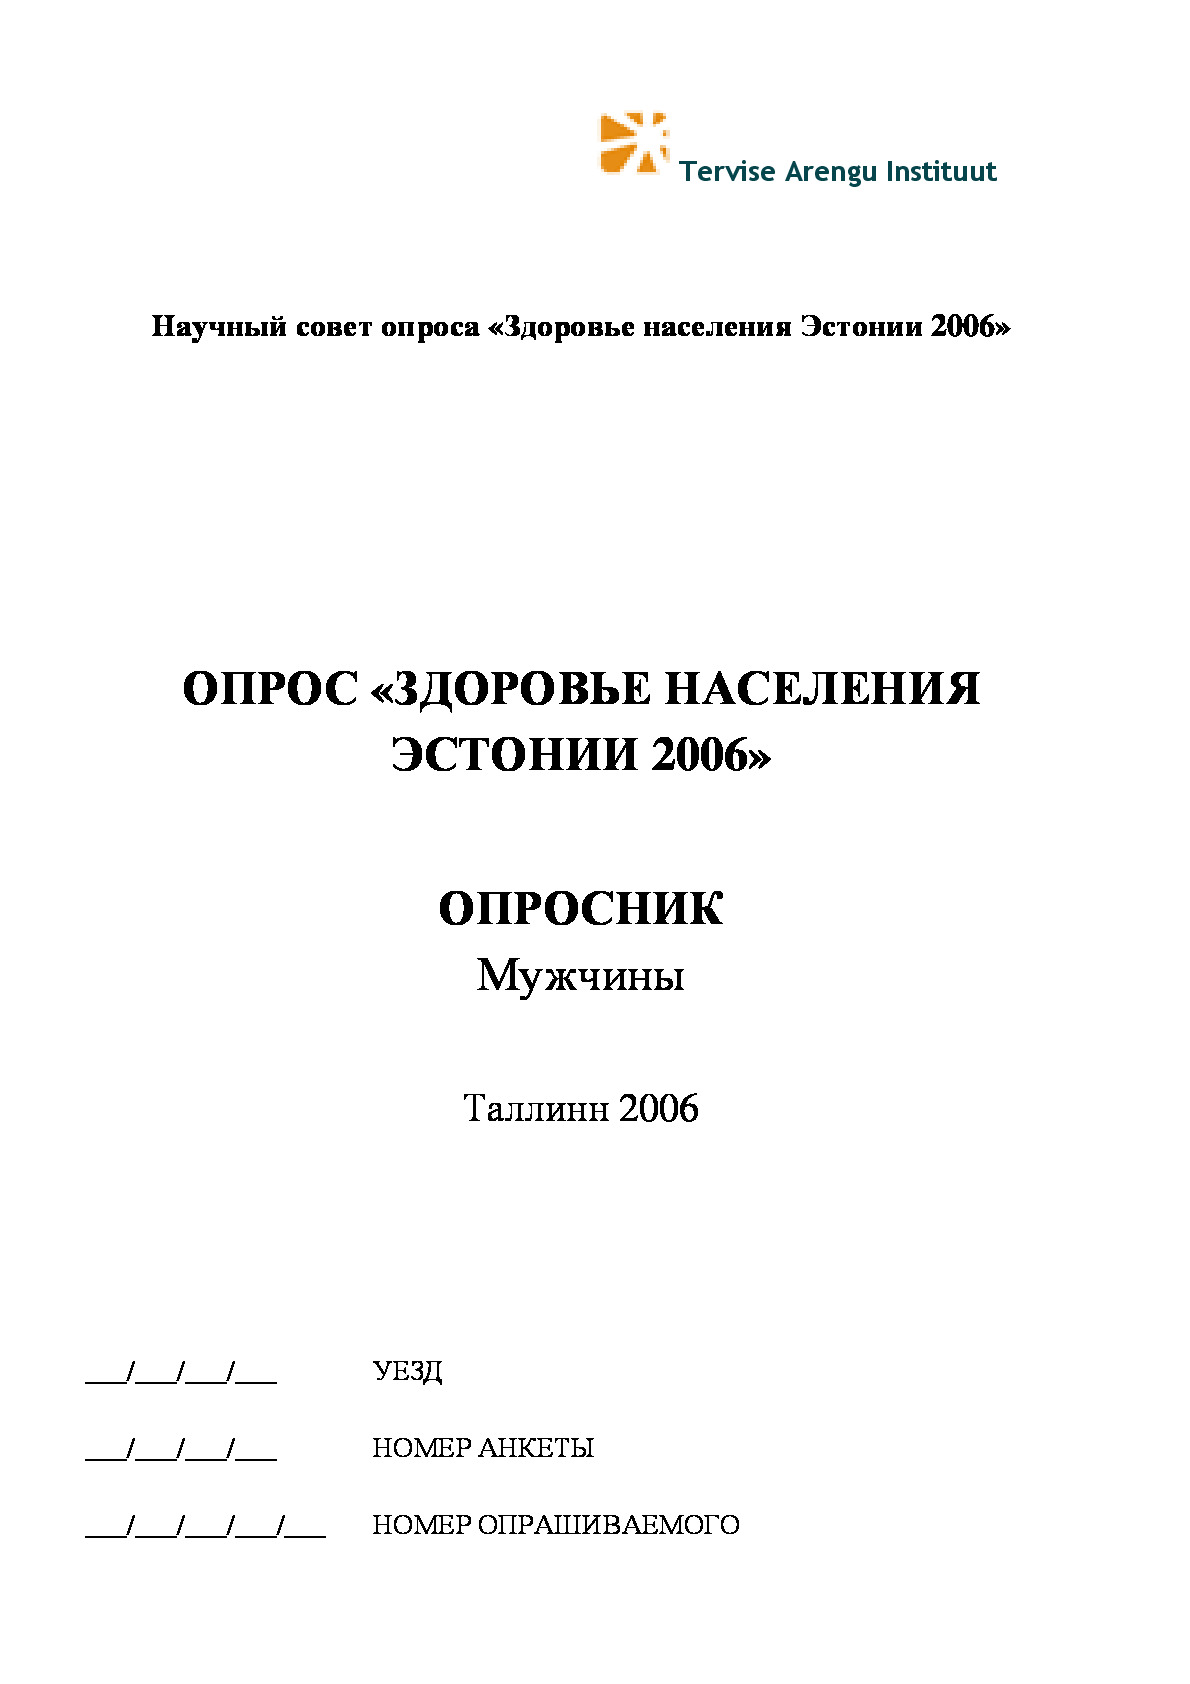 Eesti Terviseuuring 2006 meeste ankeet vene keeles